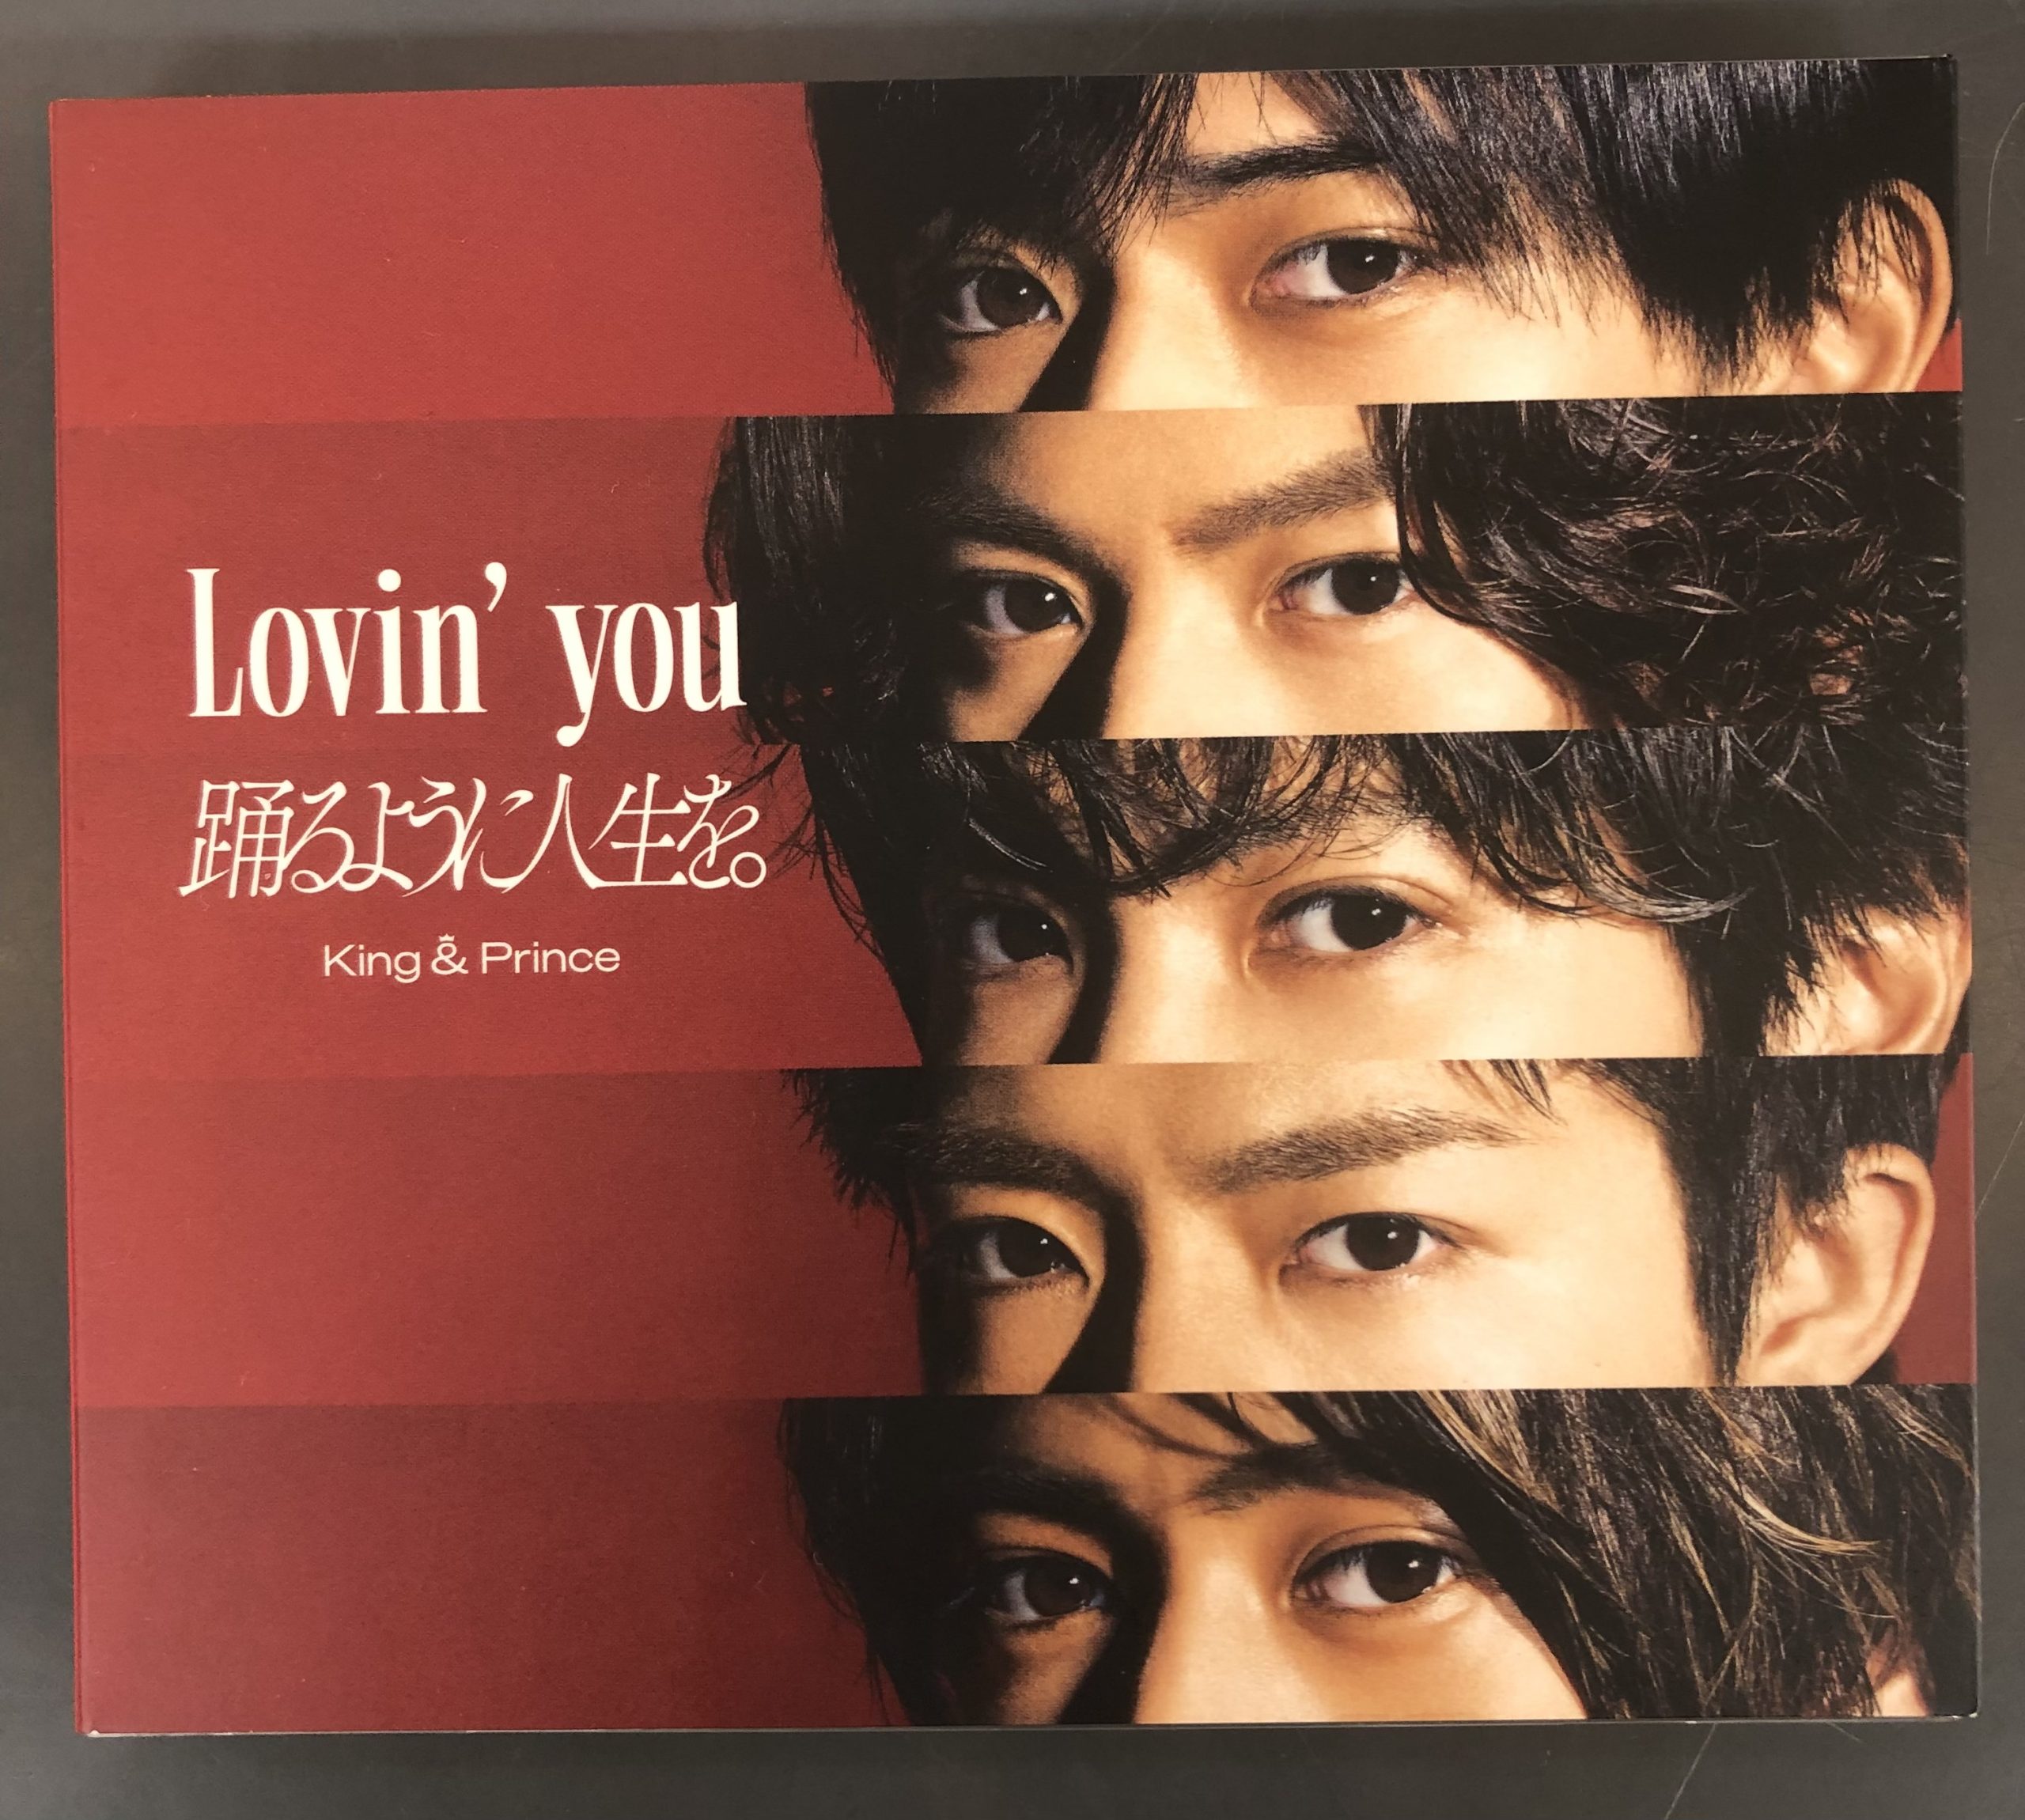 キンプリ 『Lovin’ you』DVD付き限定版 買取しました!